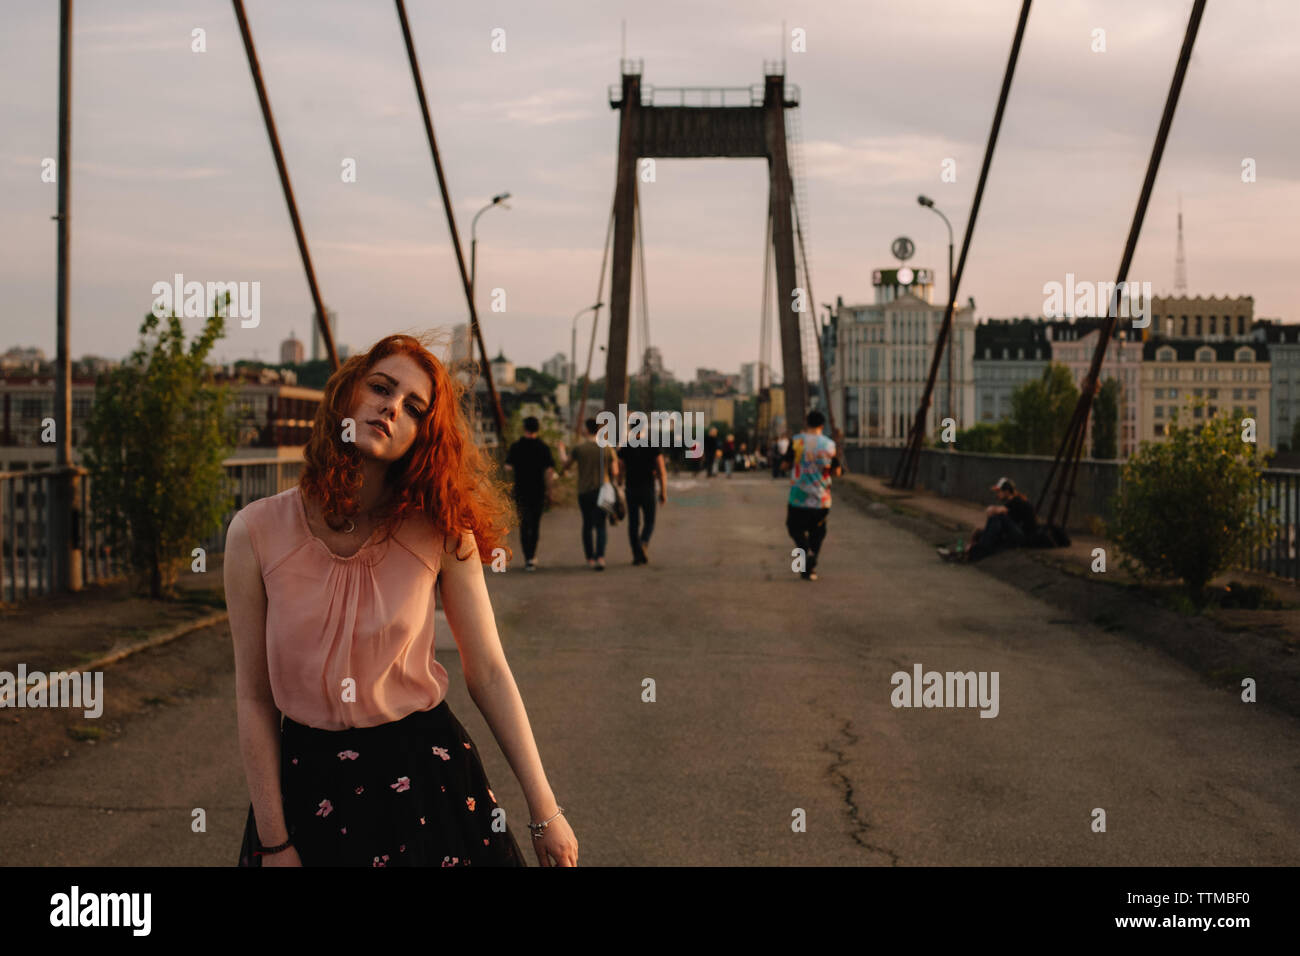 La ragazza con i capelli rossi camminando sul ponte in città Foto Stock